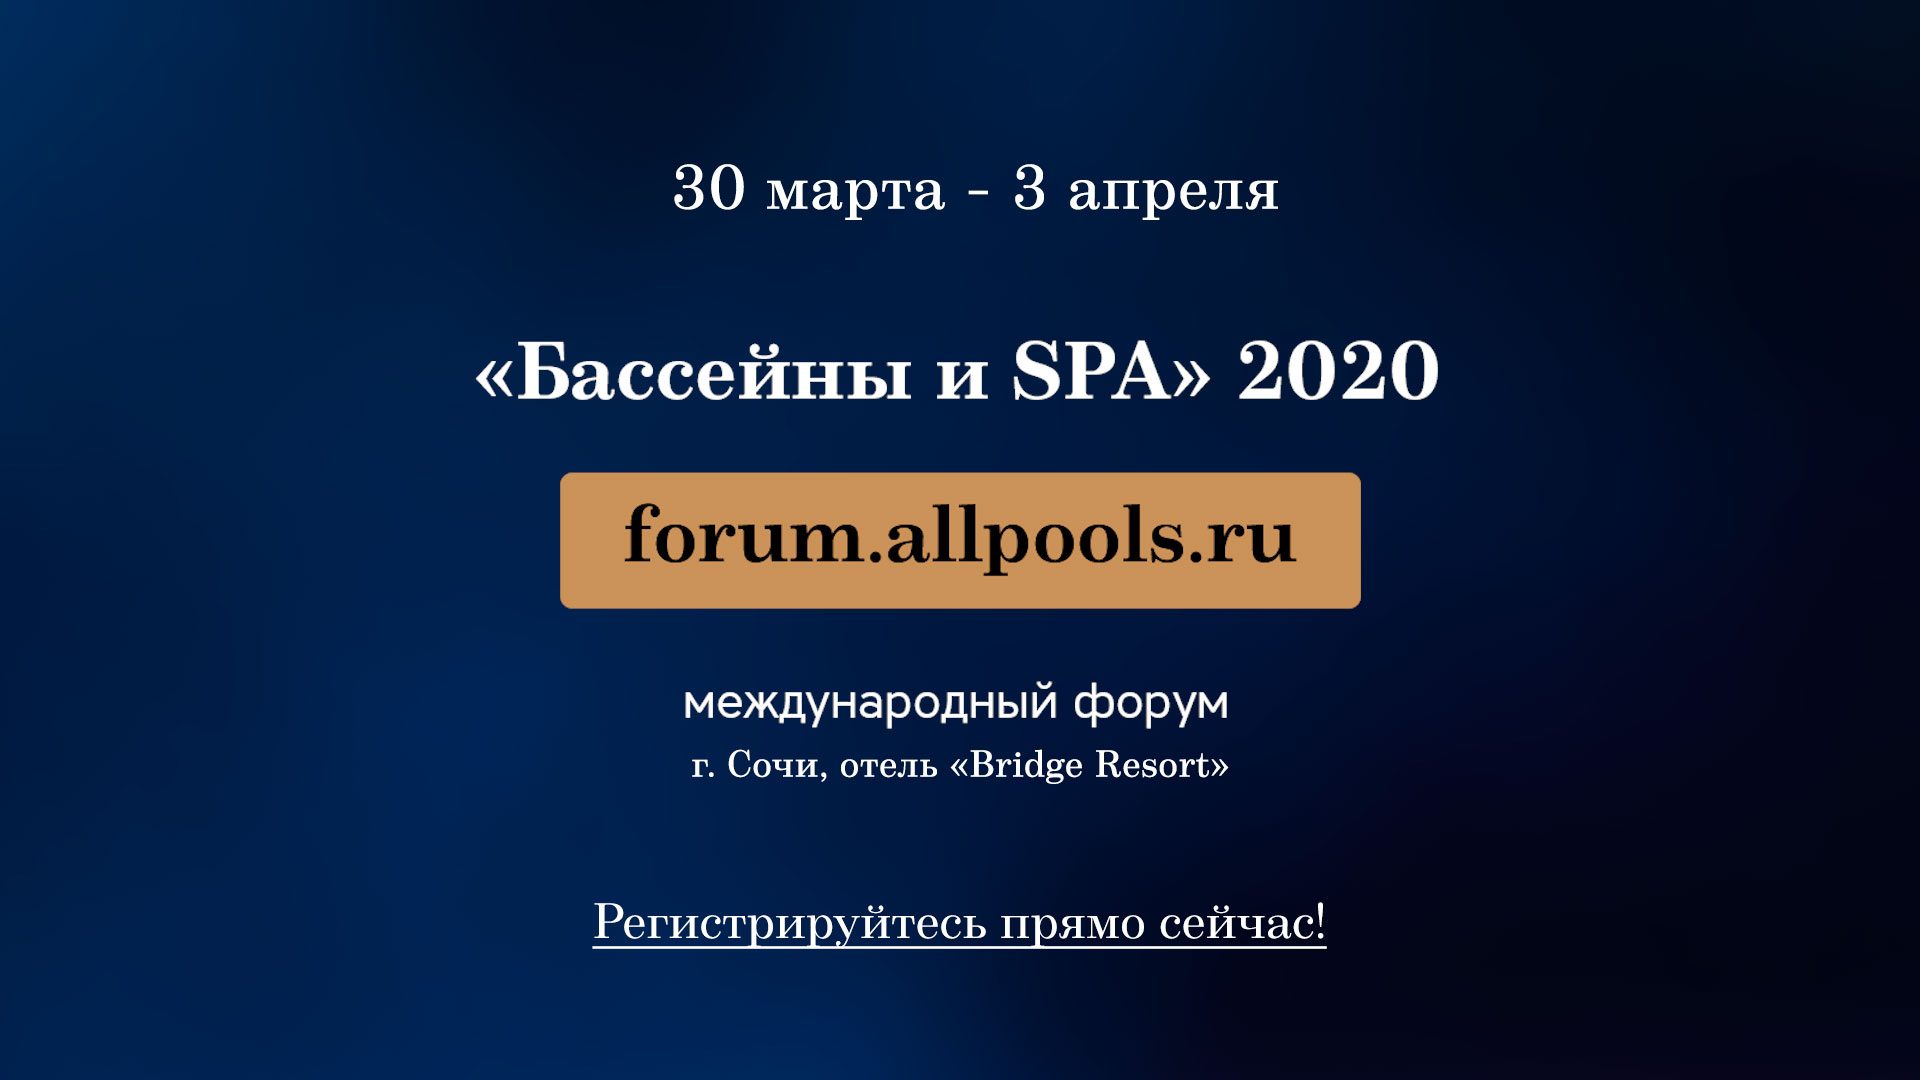 ТОП-5 Причин посетить настоящий бассейновый Форум «Бассейны и SPA 2020»